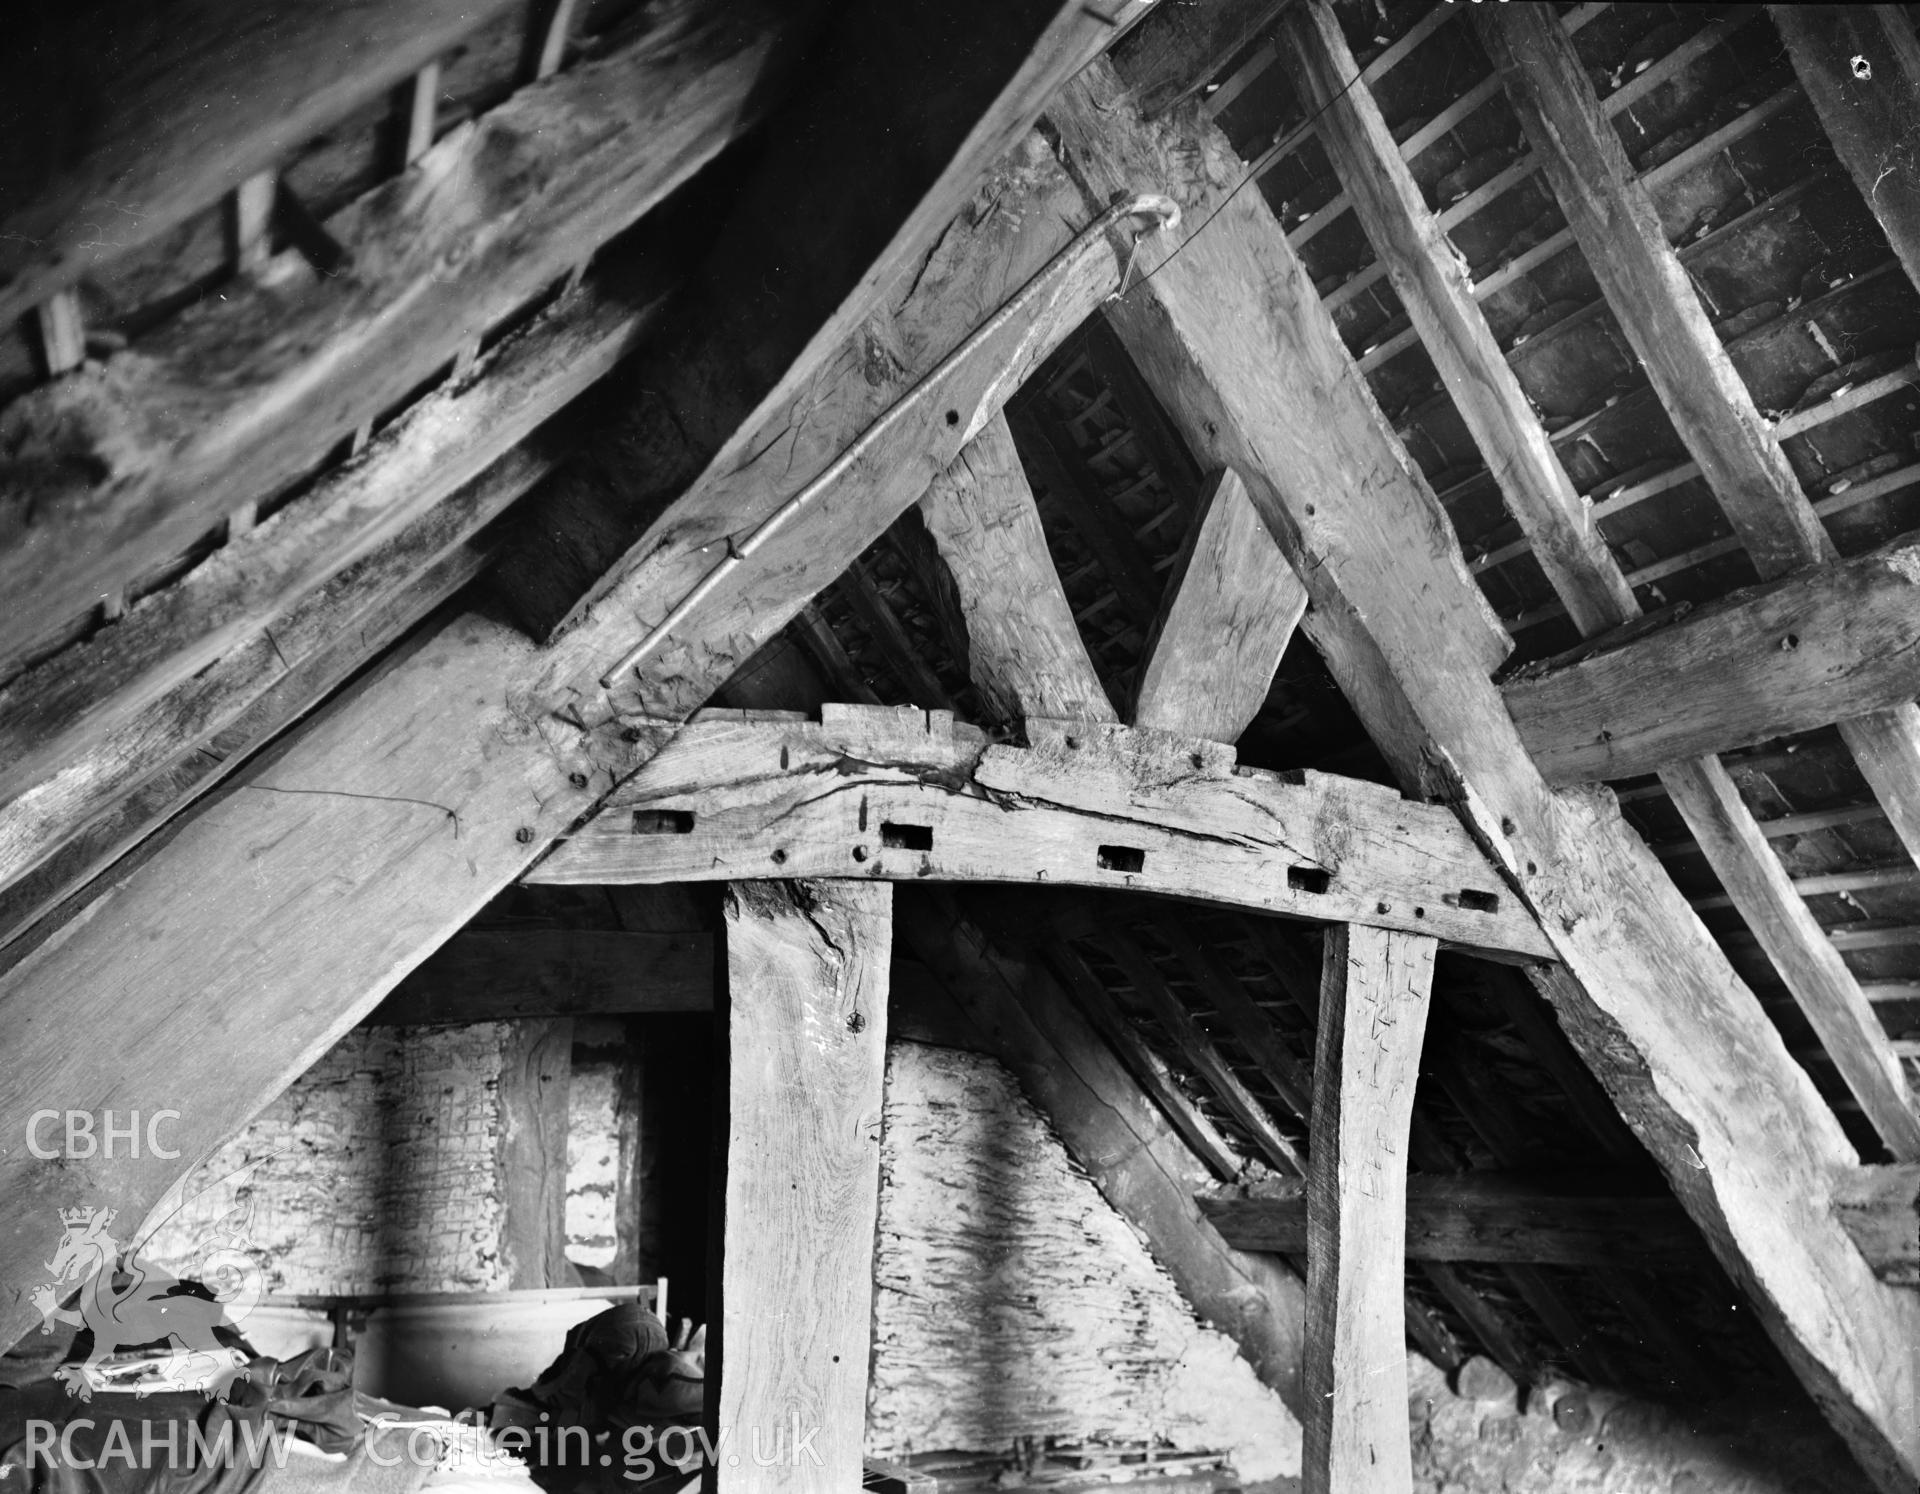 Interior view of Llannerch y felin, Caerhun showing roof beams, taken 01.10.1946.